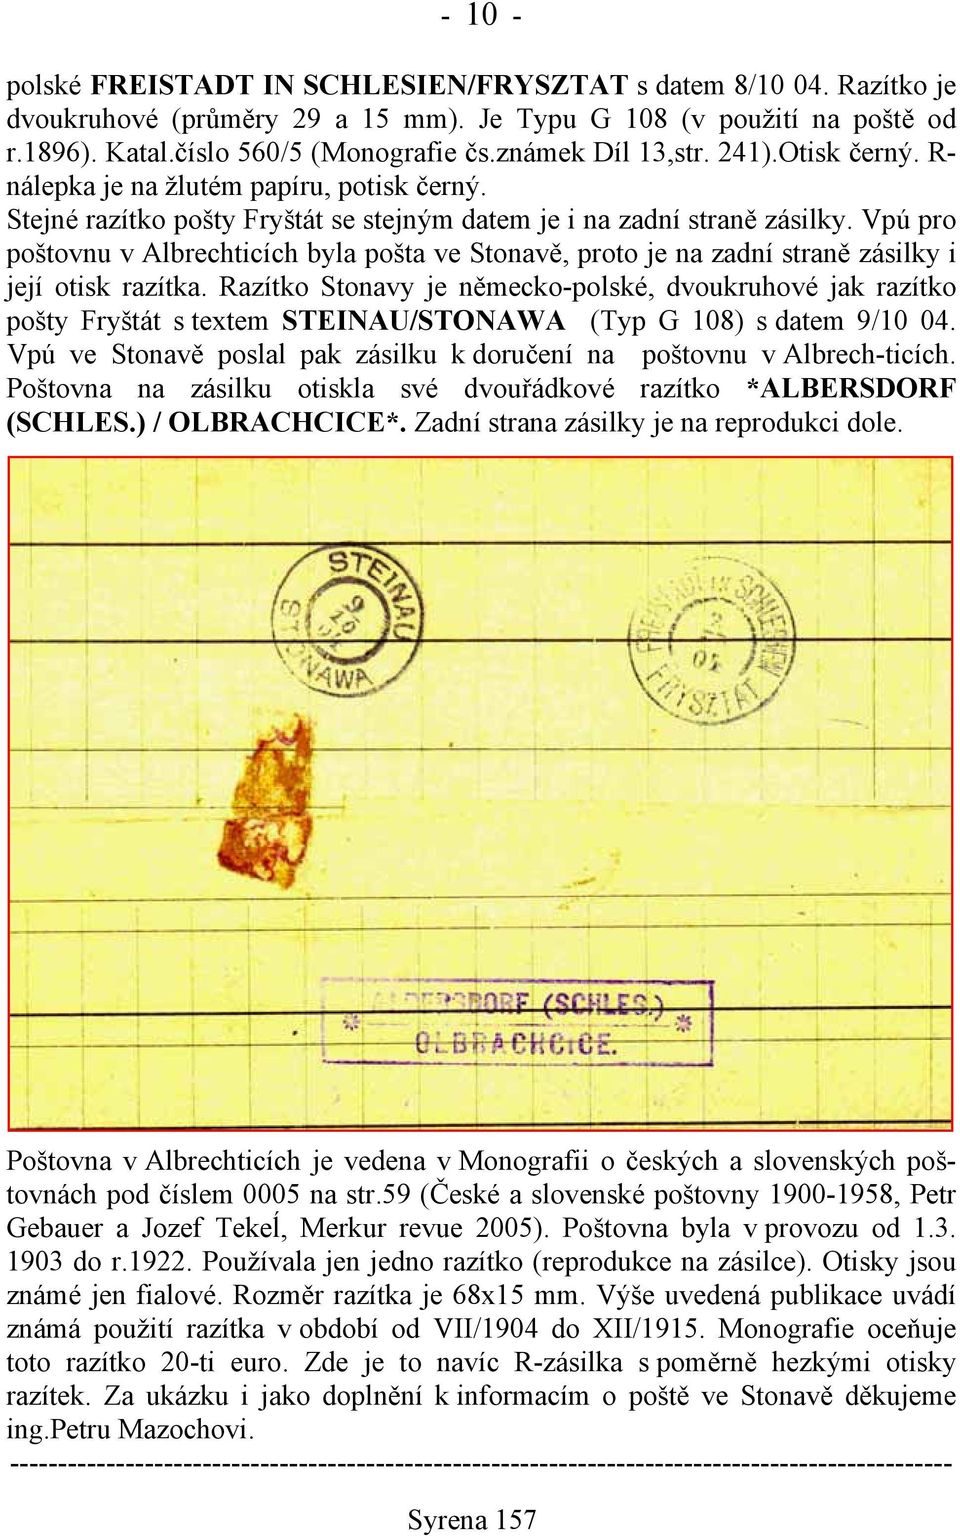 Vpú pro poštovnu v Albrechticích byla pošta ve Stonavě, proto je na zadní straně zásilky i její otisk razítka.